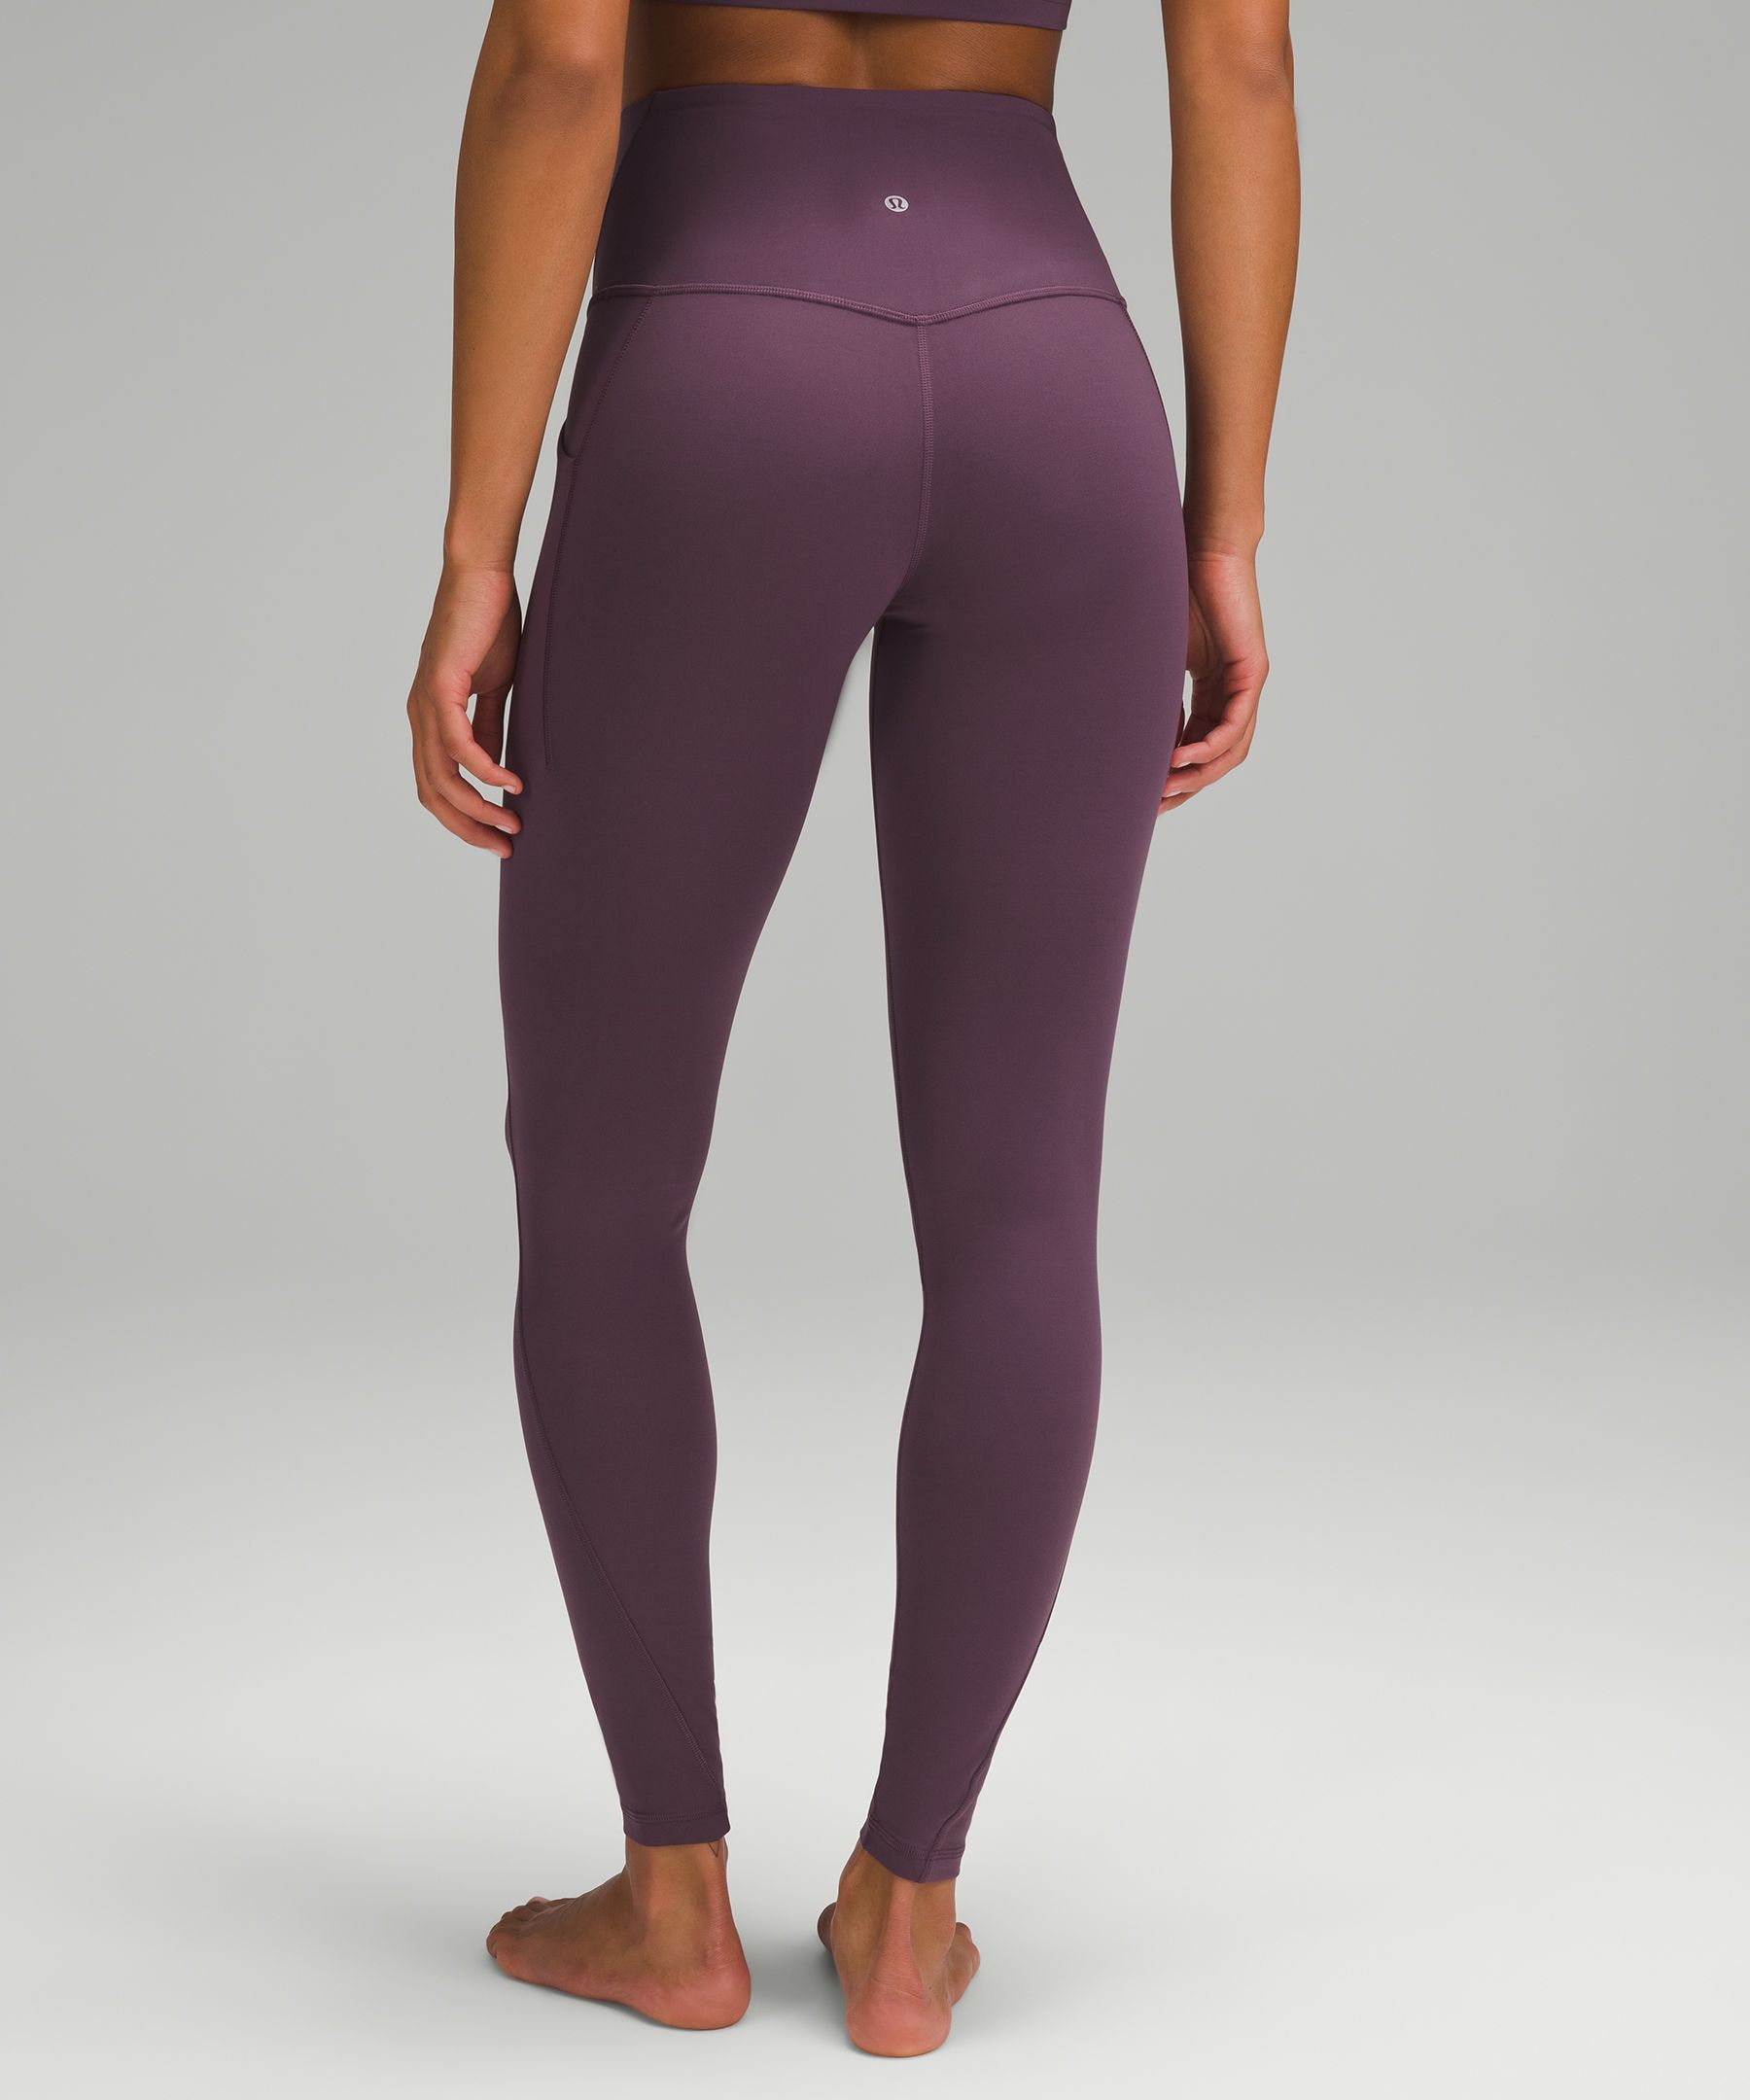  Lululemon Align Full Length Yoga Pants - High-Waisted